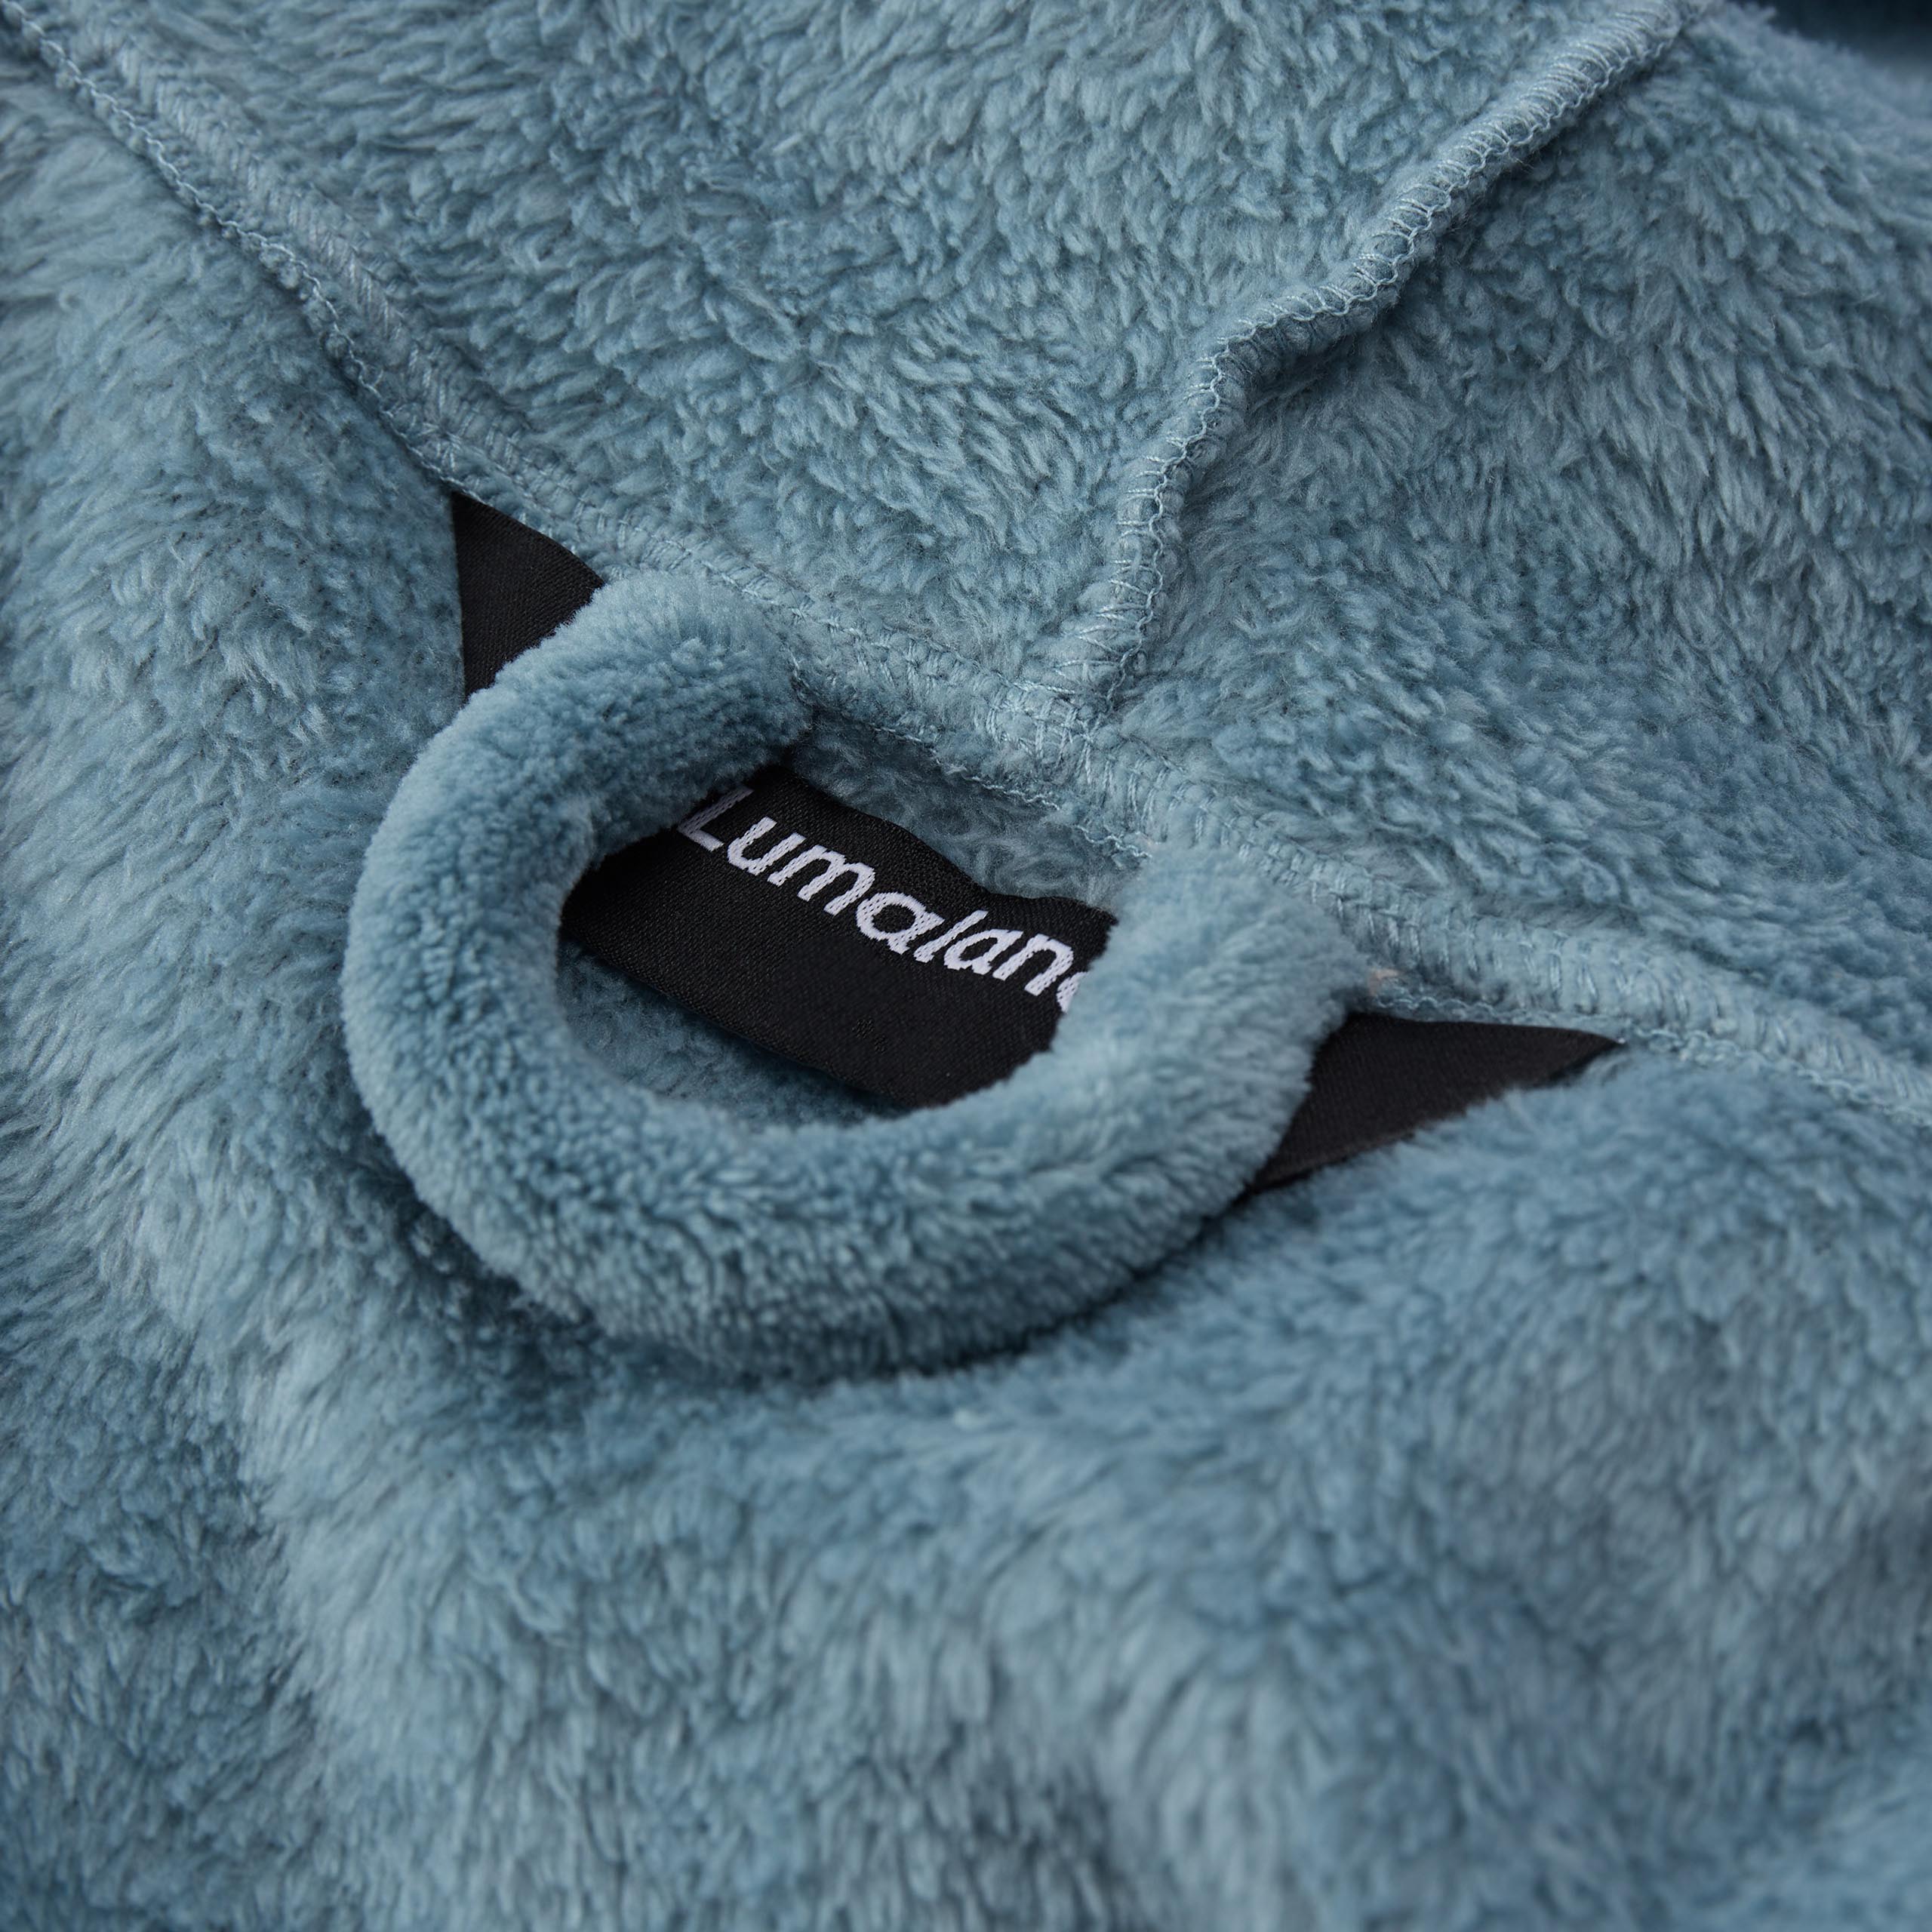 Luxury Mikrofaser Bademantel mit Kapuze für Damen und Herren - Smoky Blau - Größe M